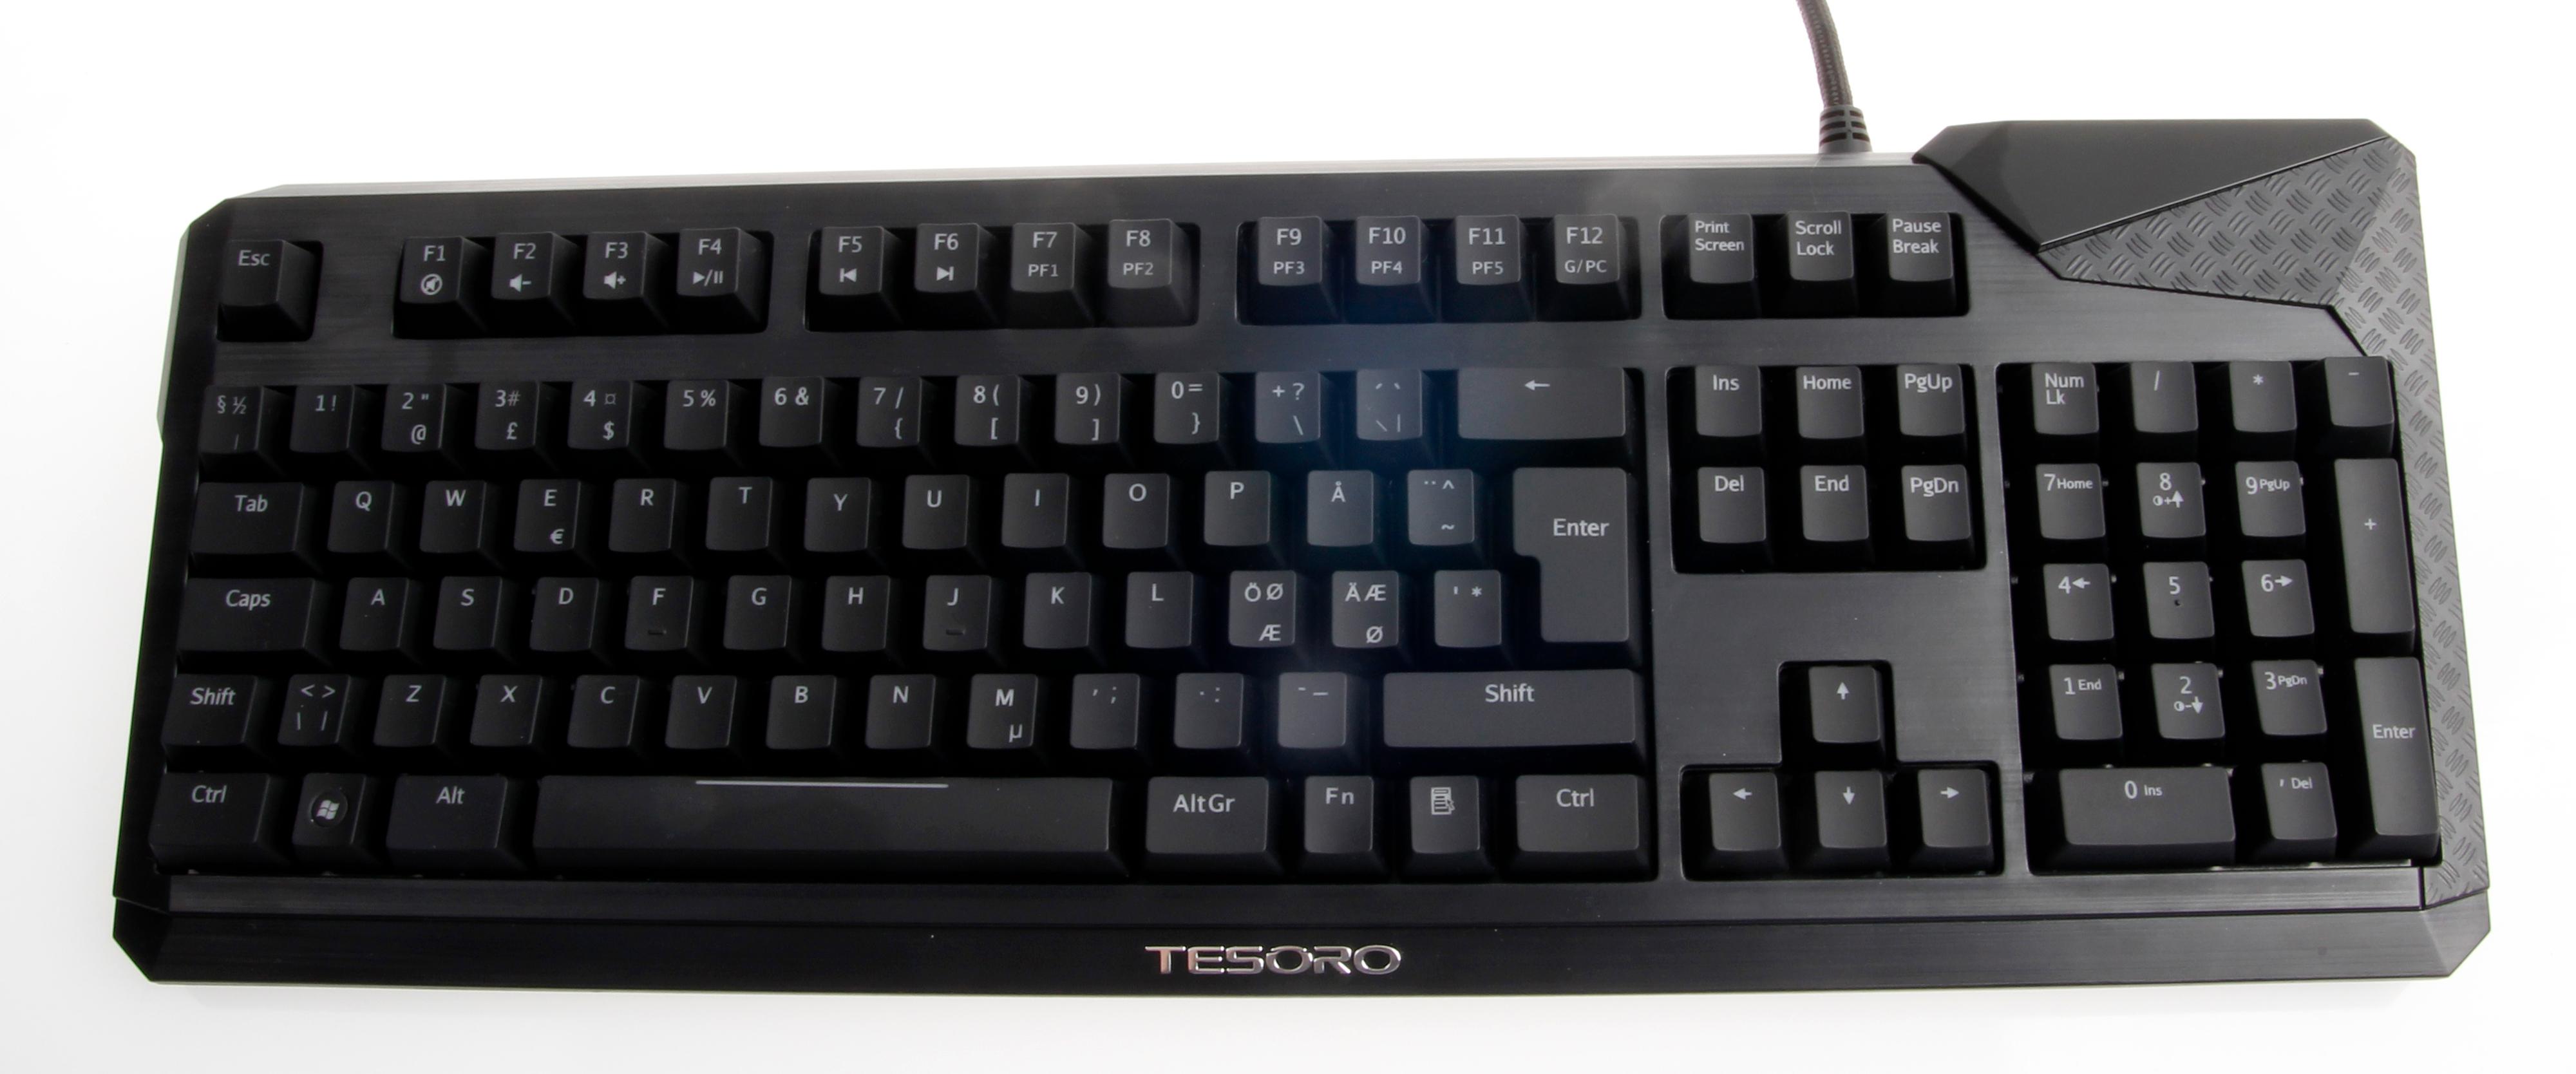 Tesoro Durandal-tastaturene kommer i mange versjoner.